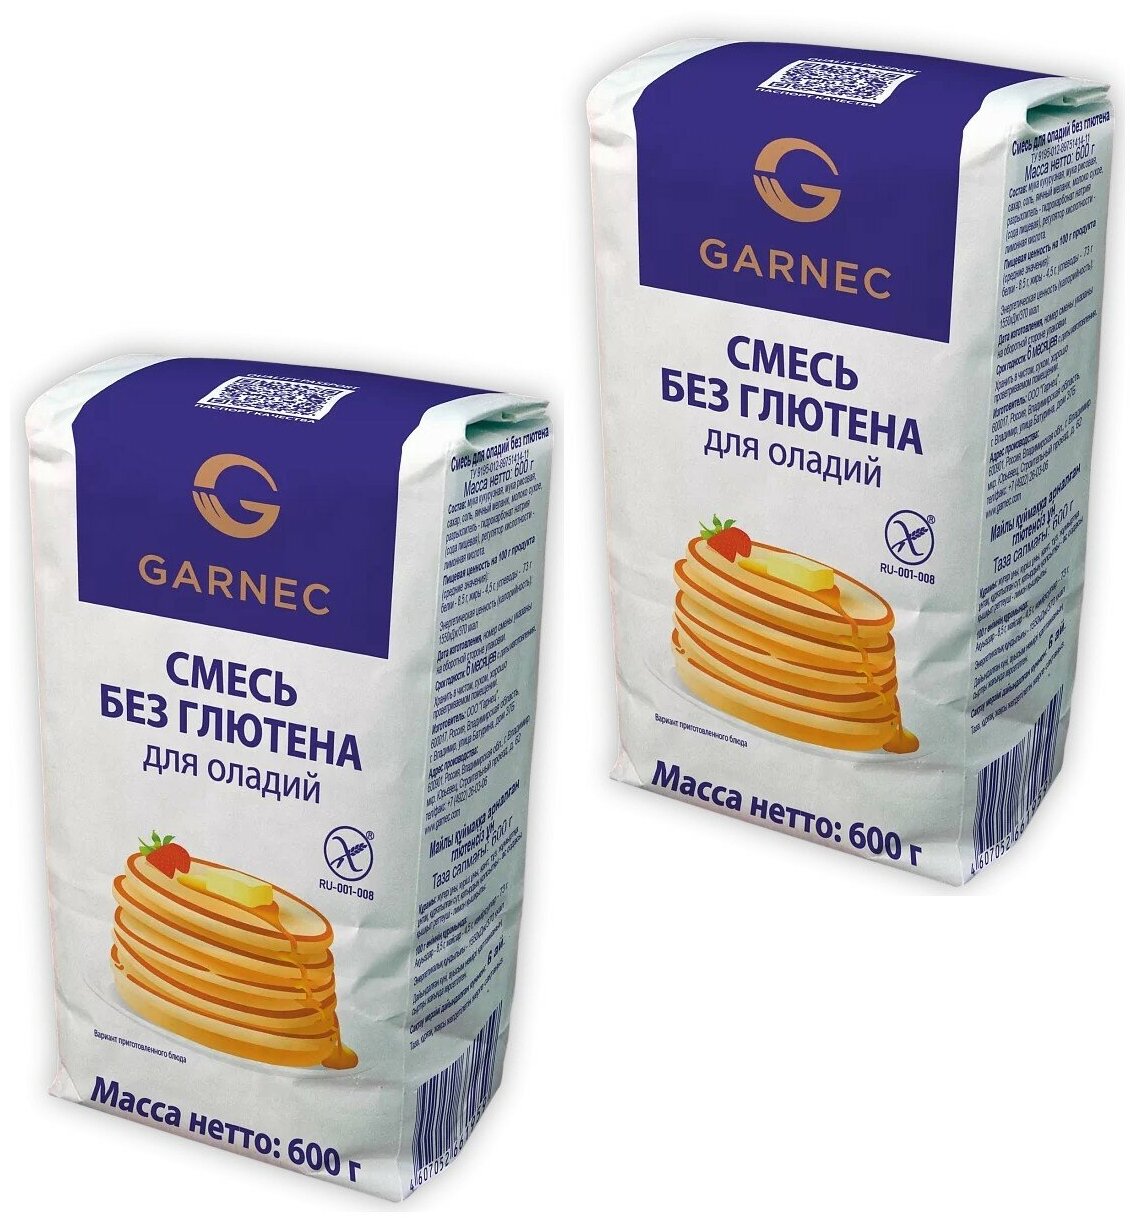 Garnec Смесь для приготовления оладьев Без глютена 600 г, 2 упаковки.